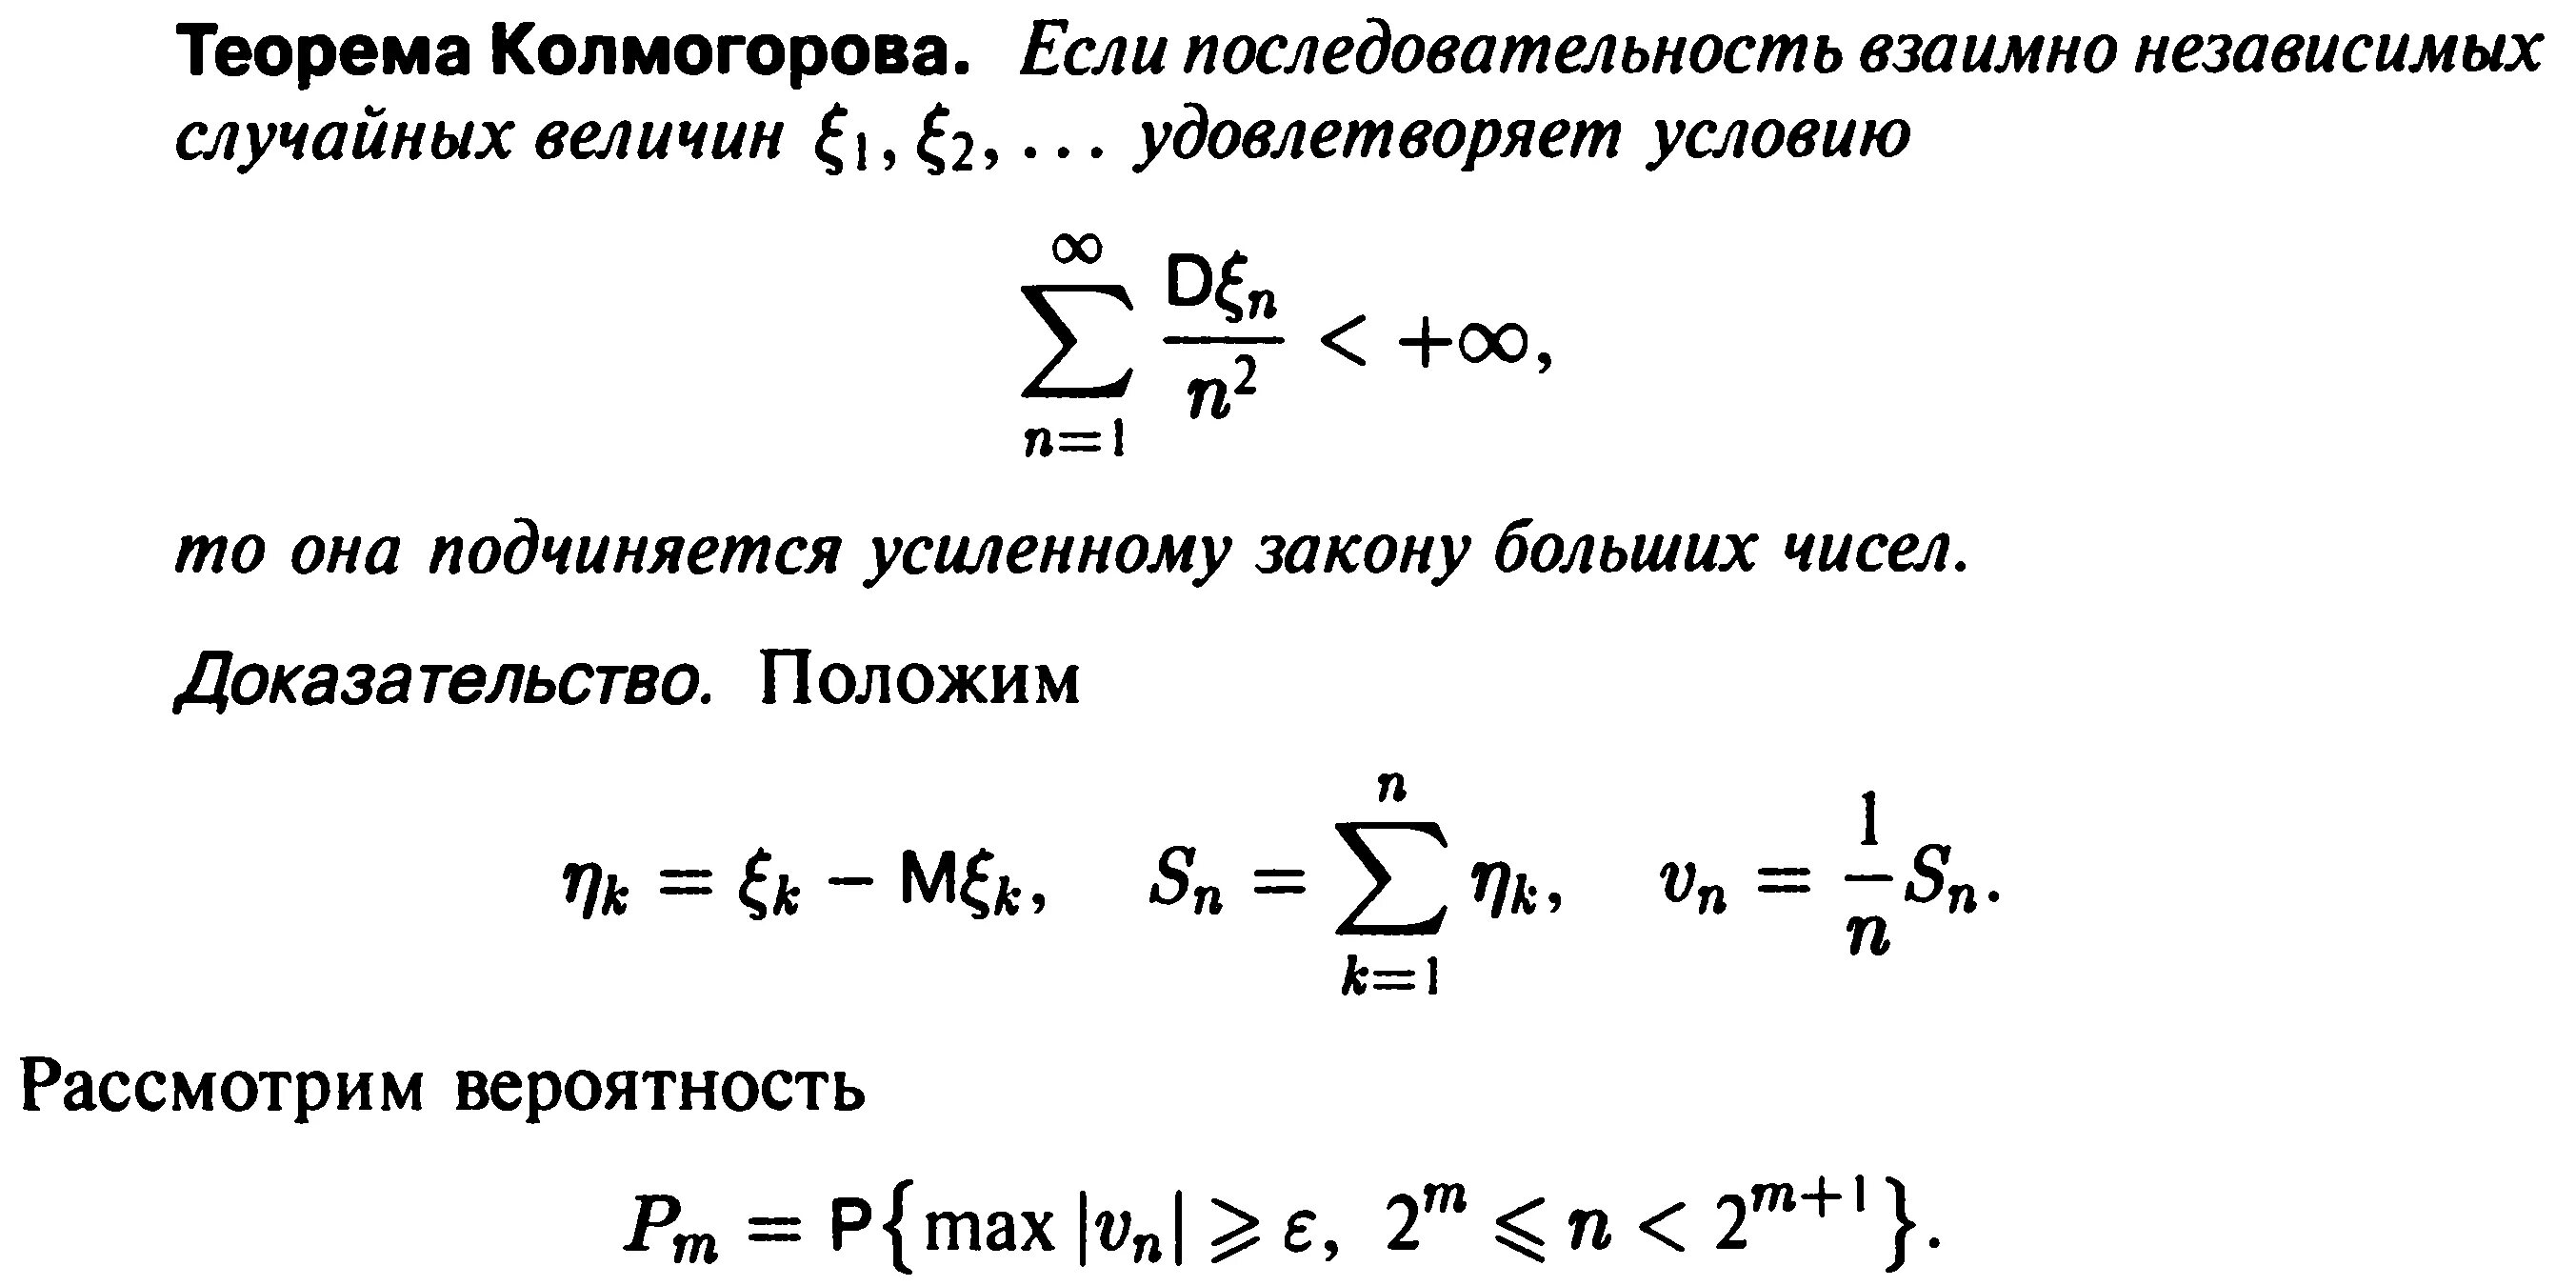 Теорема Колмогорова теория вероятности. Закон больших чисел Колмогорова. Усиленный закон больших чисел Колмогорова. Теорема Колмогорова статистика.